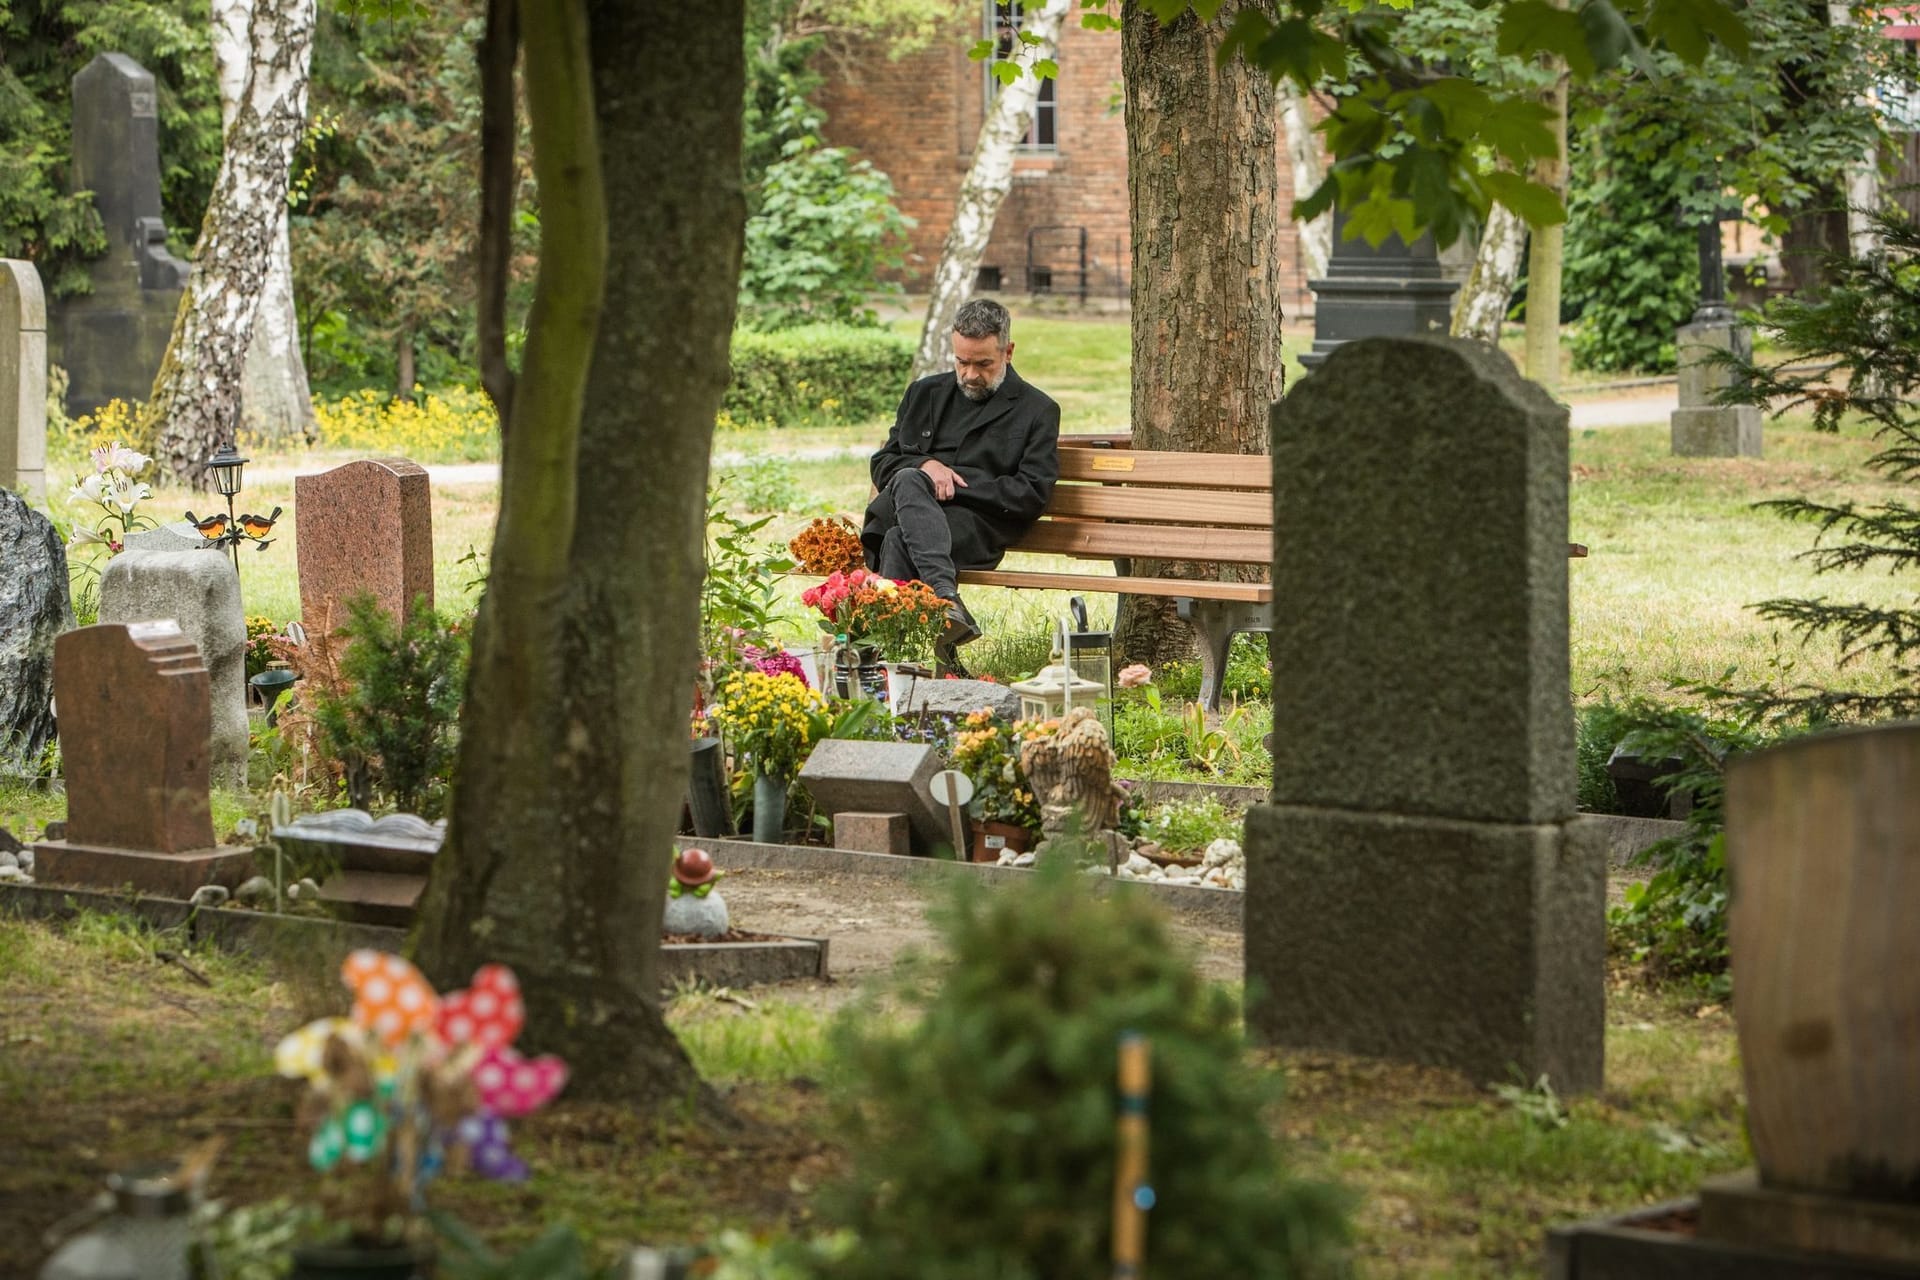 Trauer hat viele Gesichter: Einige meiden den Friedhof mit dem Grab des geliebten Menschen komplett, andere verbringen dort sehr viel Zeit.